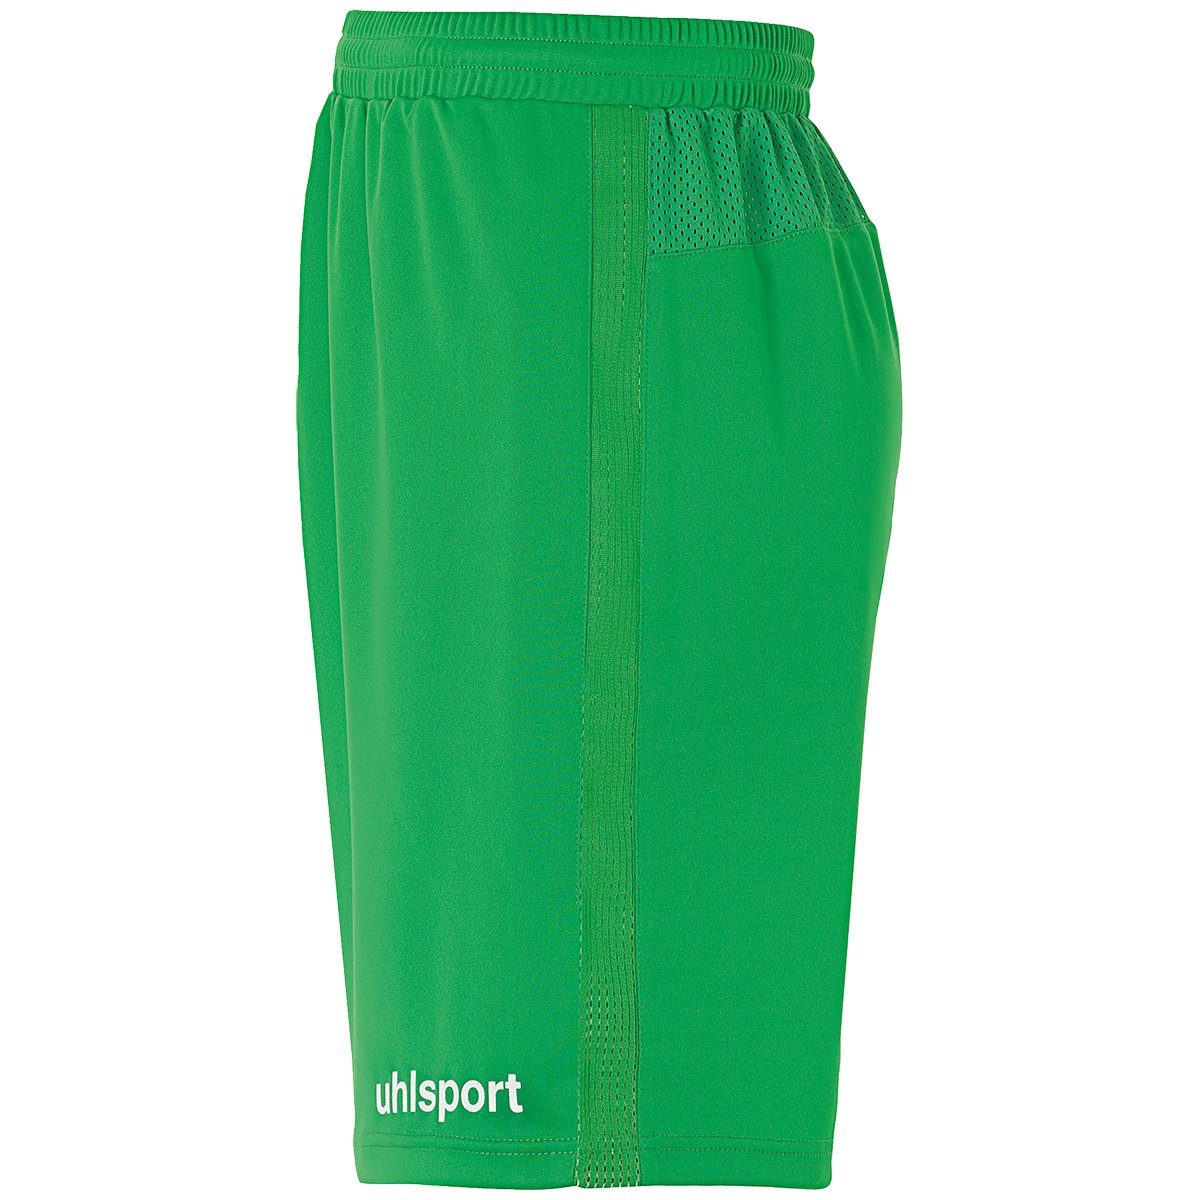 uhlsport Shorts uhlsport PERFORMANCE grün/weiß Shorts SHORTS